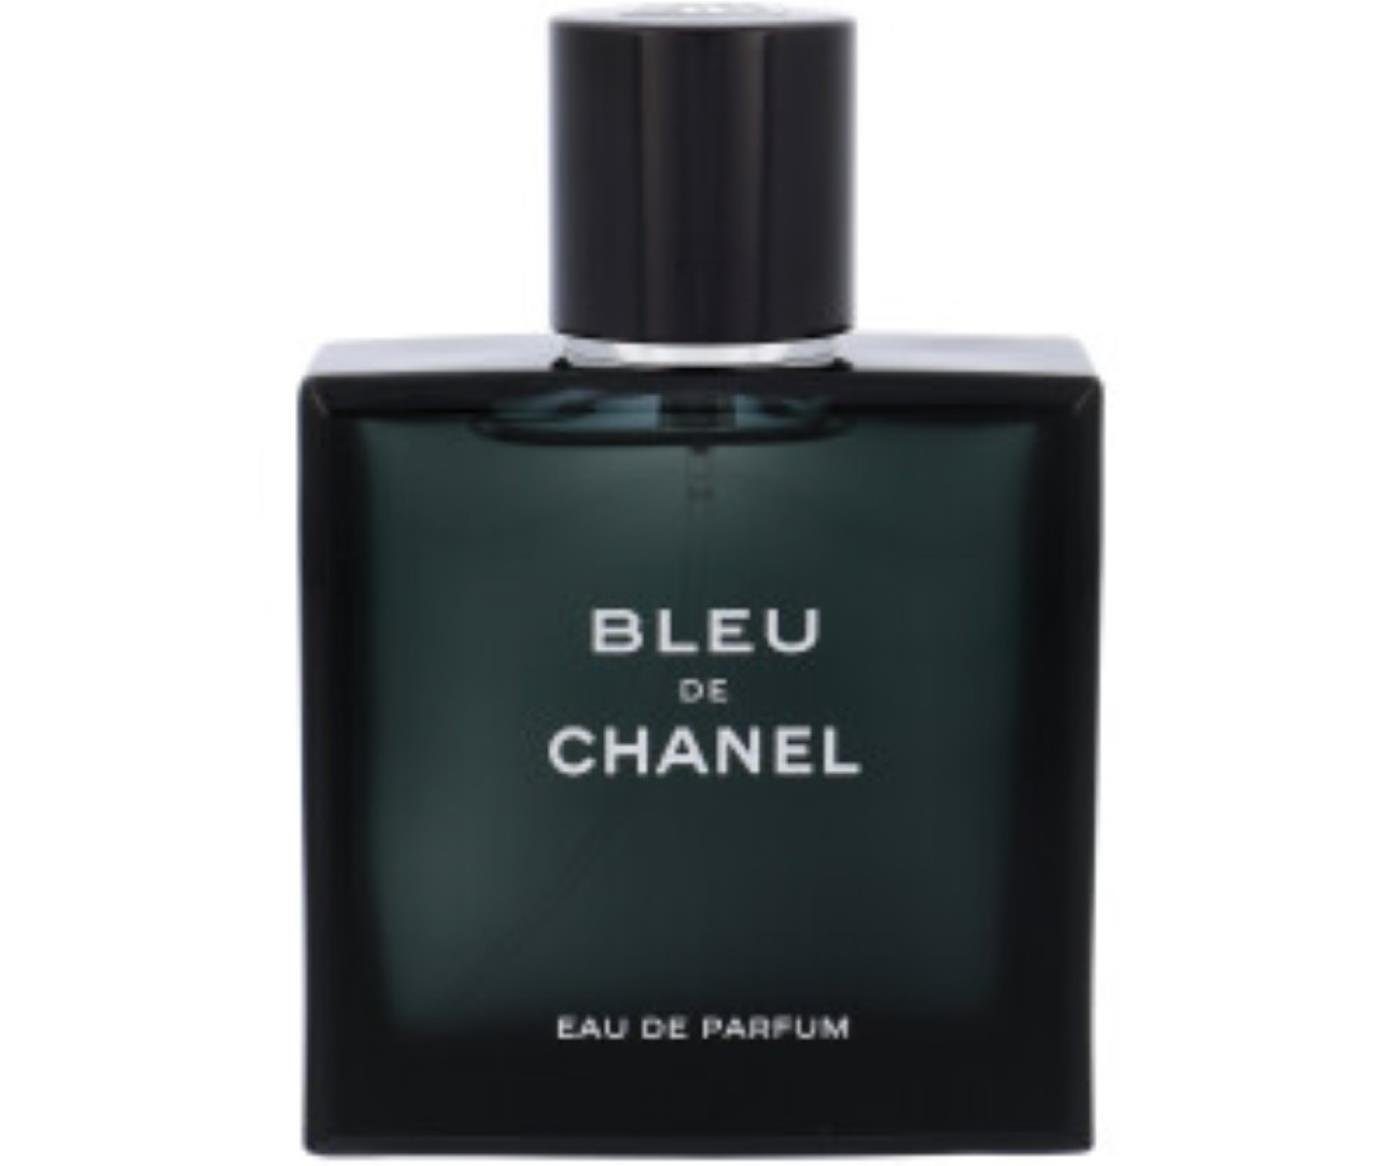 CHANEL Eau de Parfum Chanel Bleu Eau de Parfum